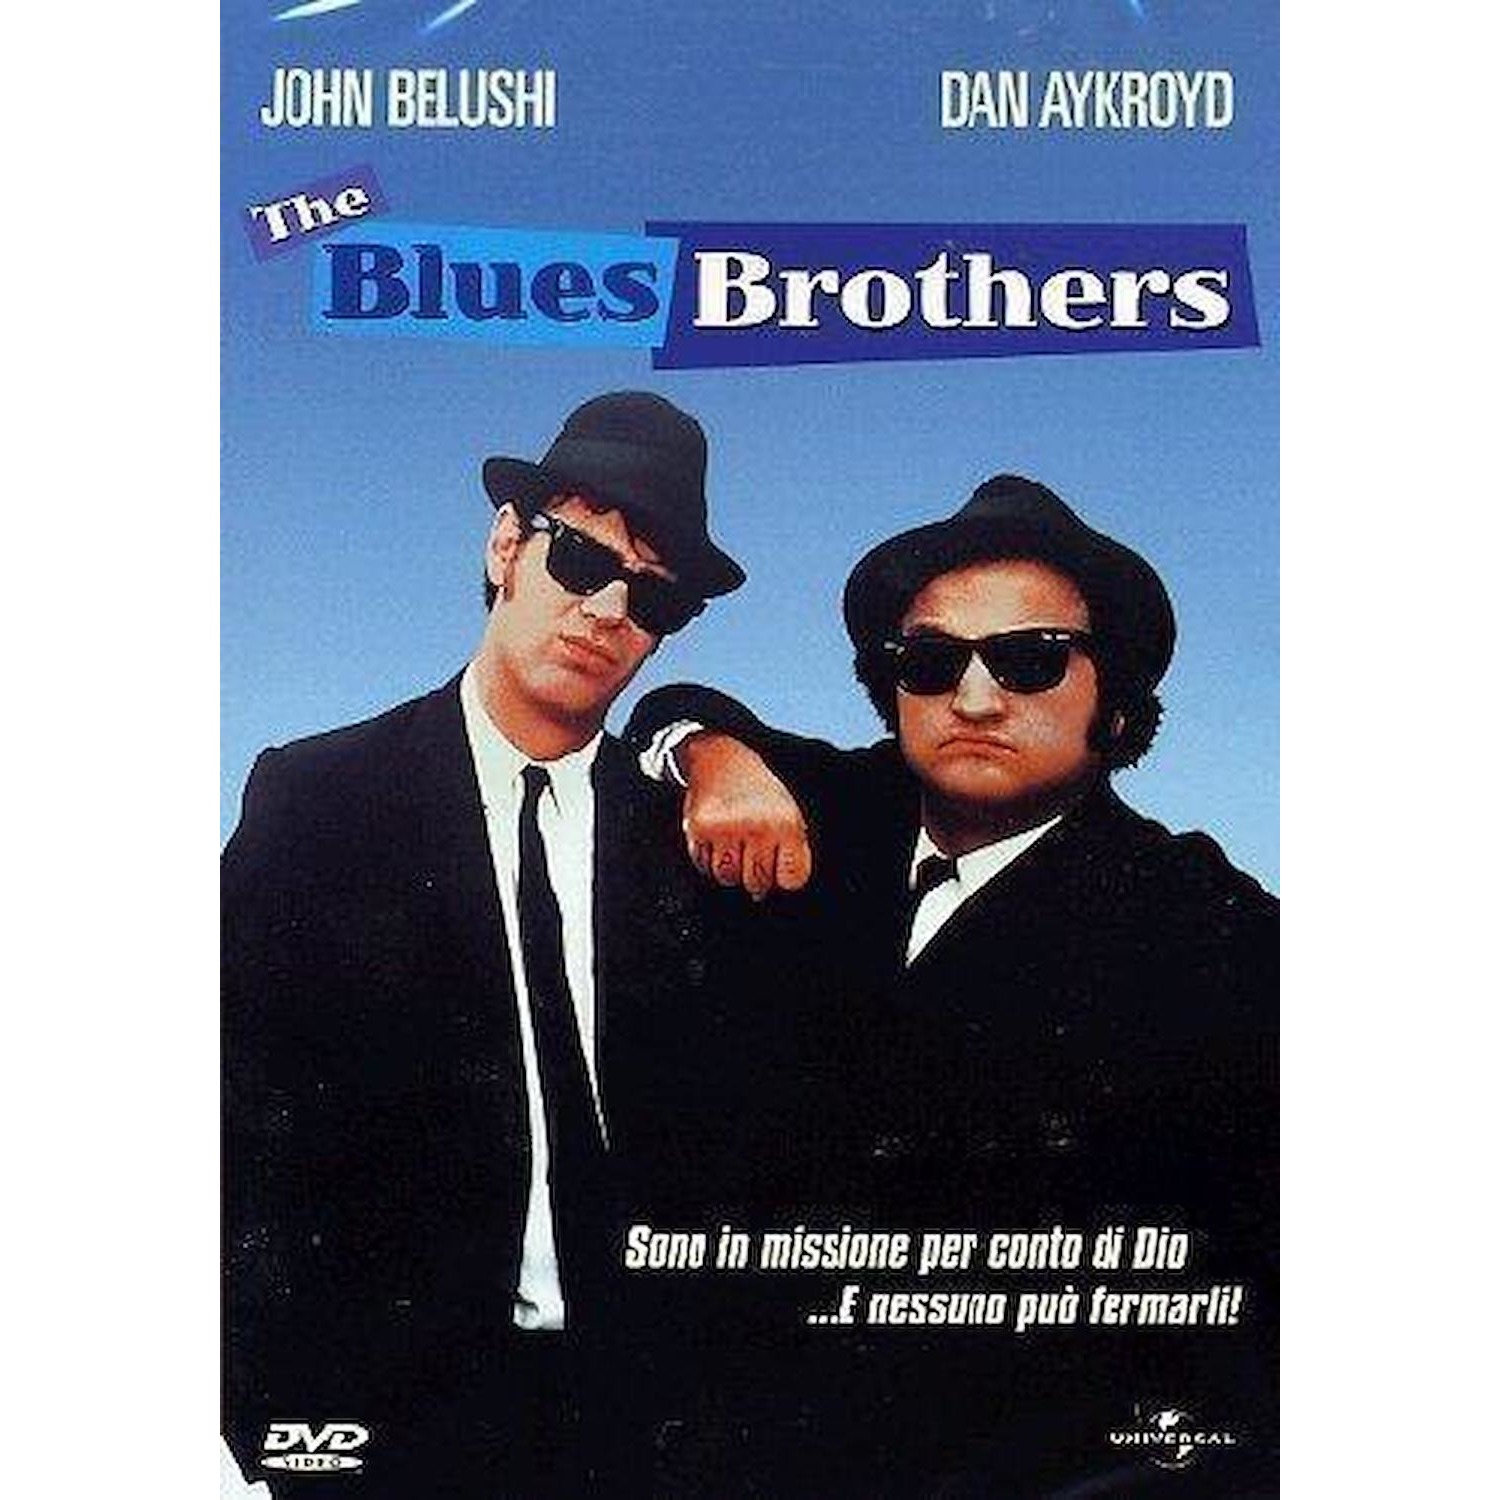 Immagine per DVD The blues Brothers da DIMOStore